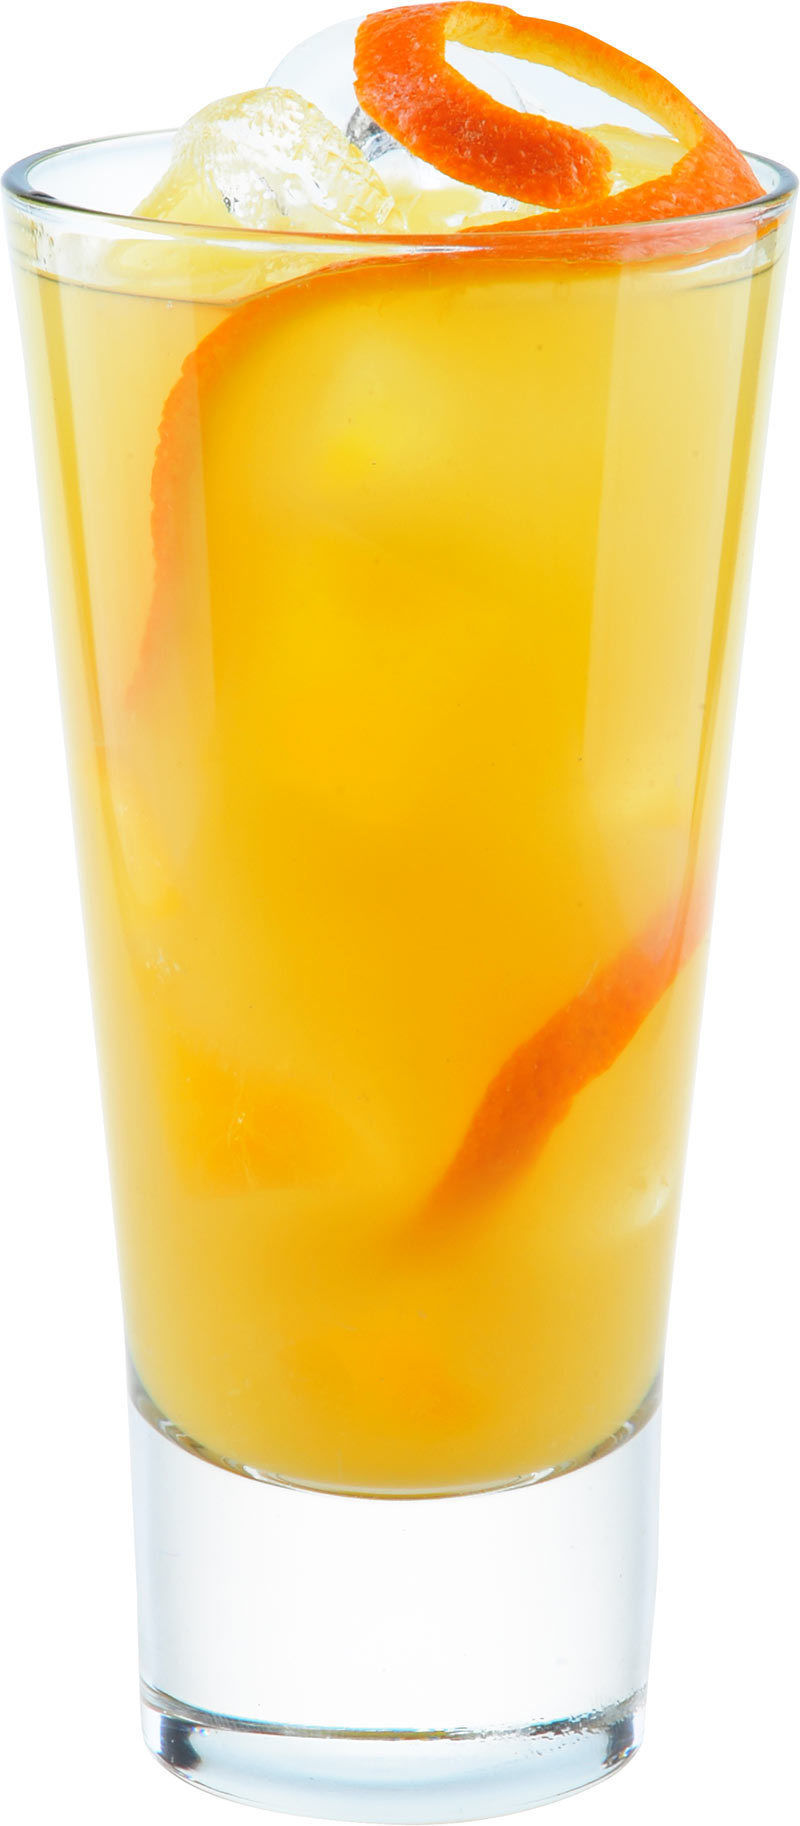 Comment préparer le cocktail Bianco orange